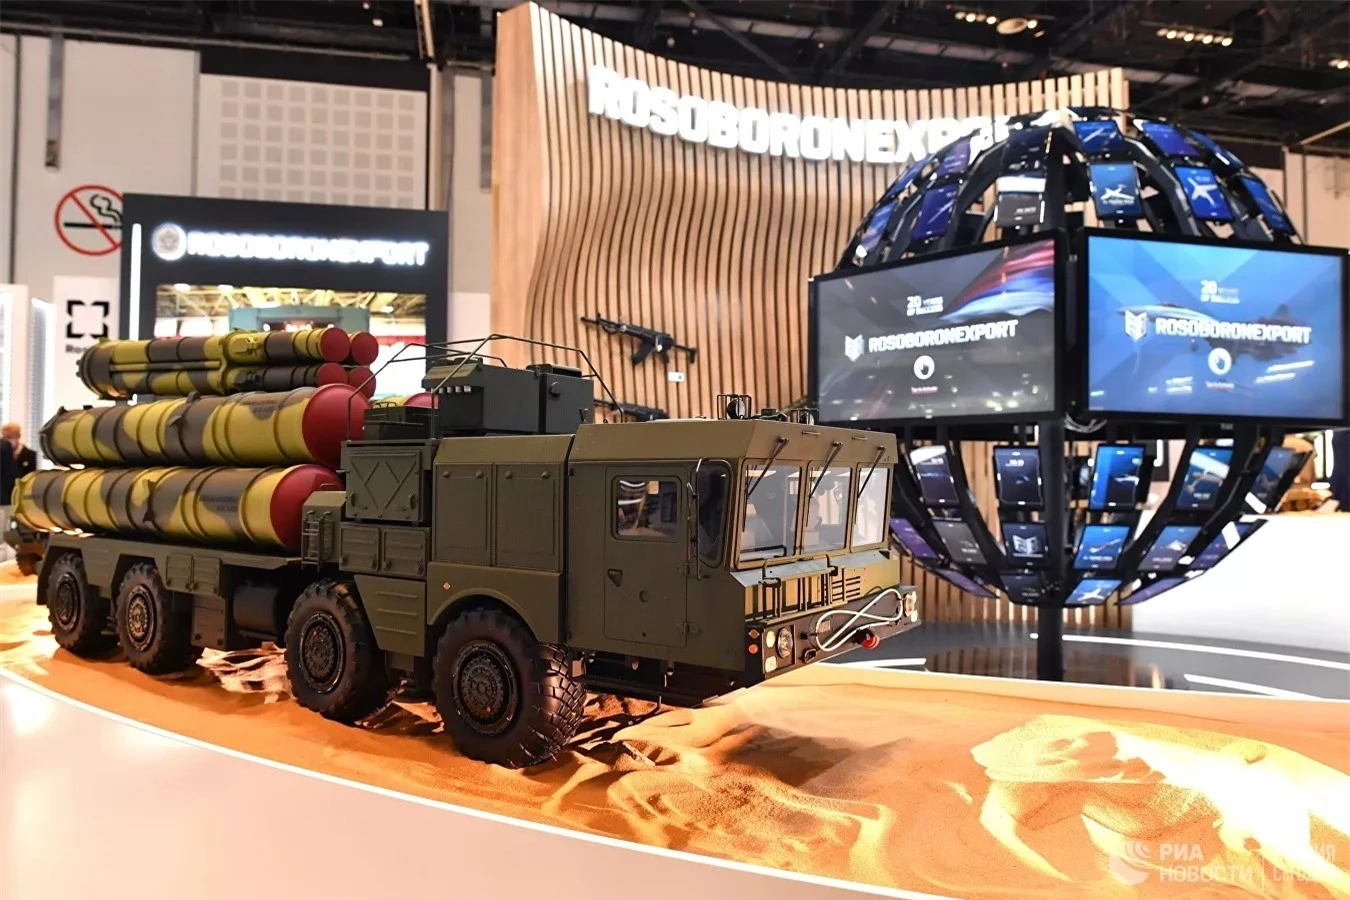 Nga 'khoe' vũ khí gì mới tại triển lãm IDEX-2021 ở UAE?